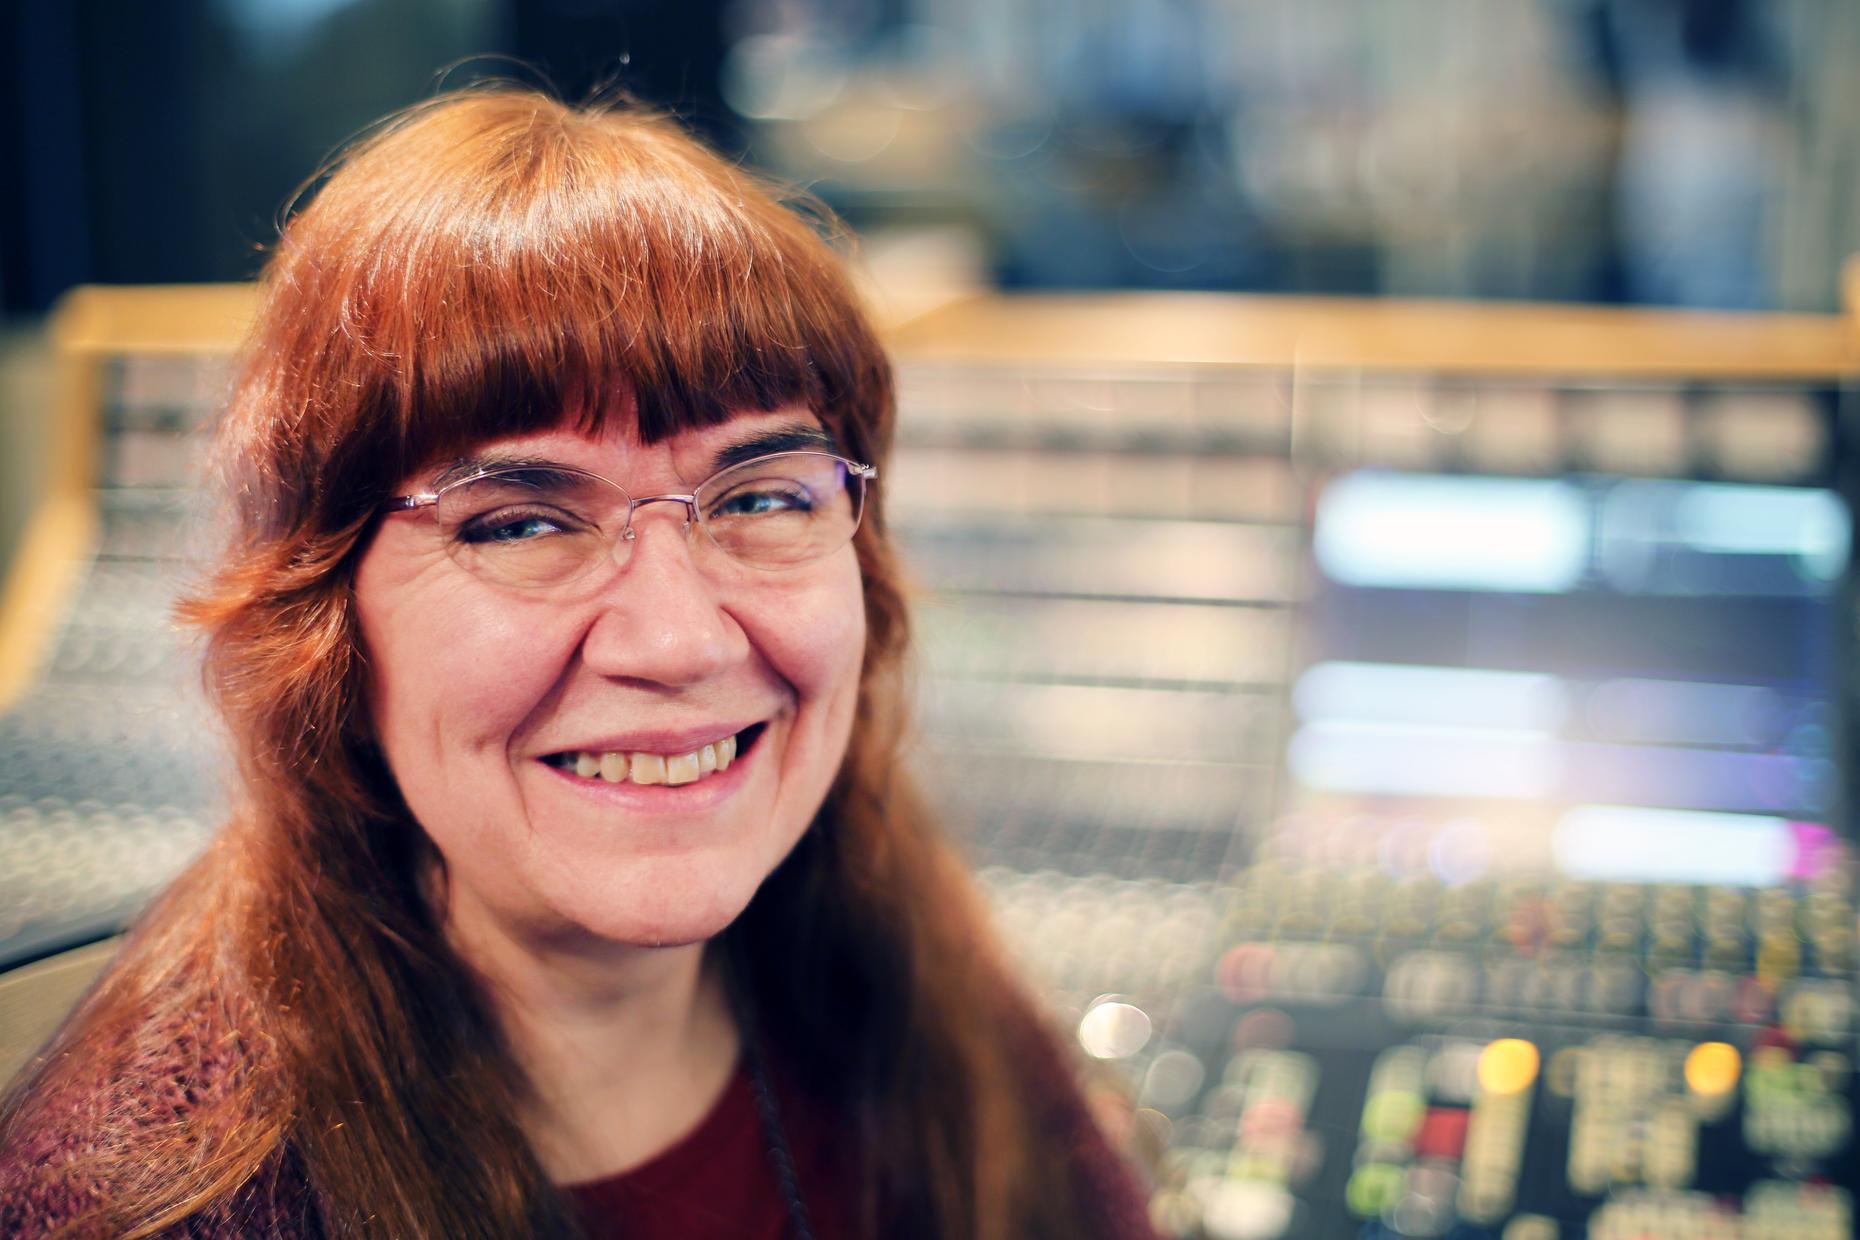 Audio engineer extraordinaire Irene Trudel.